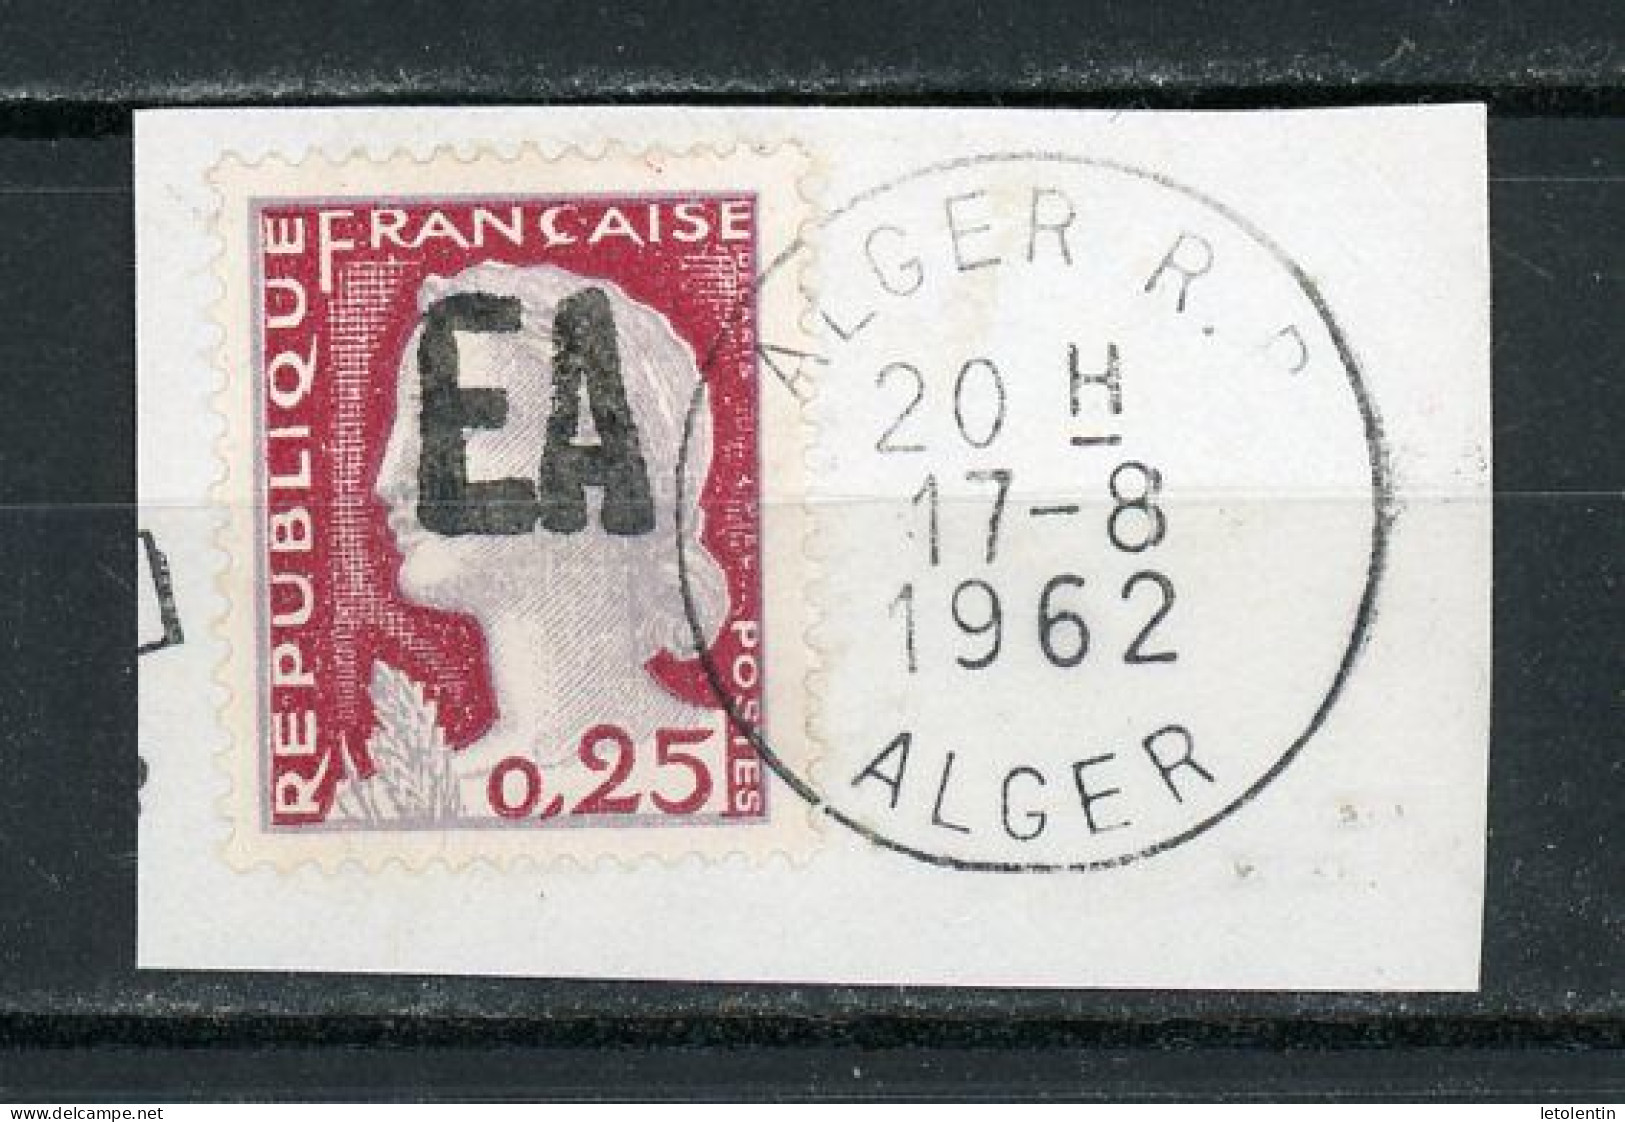 ALGÉRIE : M. DE DECARIS - (SURCH. EA) N° Yvert 355 Obli. "RÉPUBLIQUE FRANÇAISE" NON RAYÉ (SUR FRAGMENT) - Algeria (1962-...)